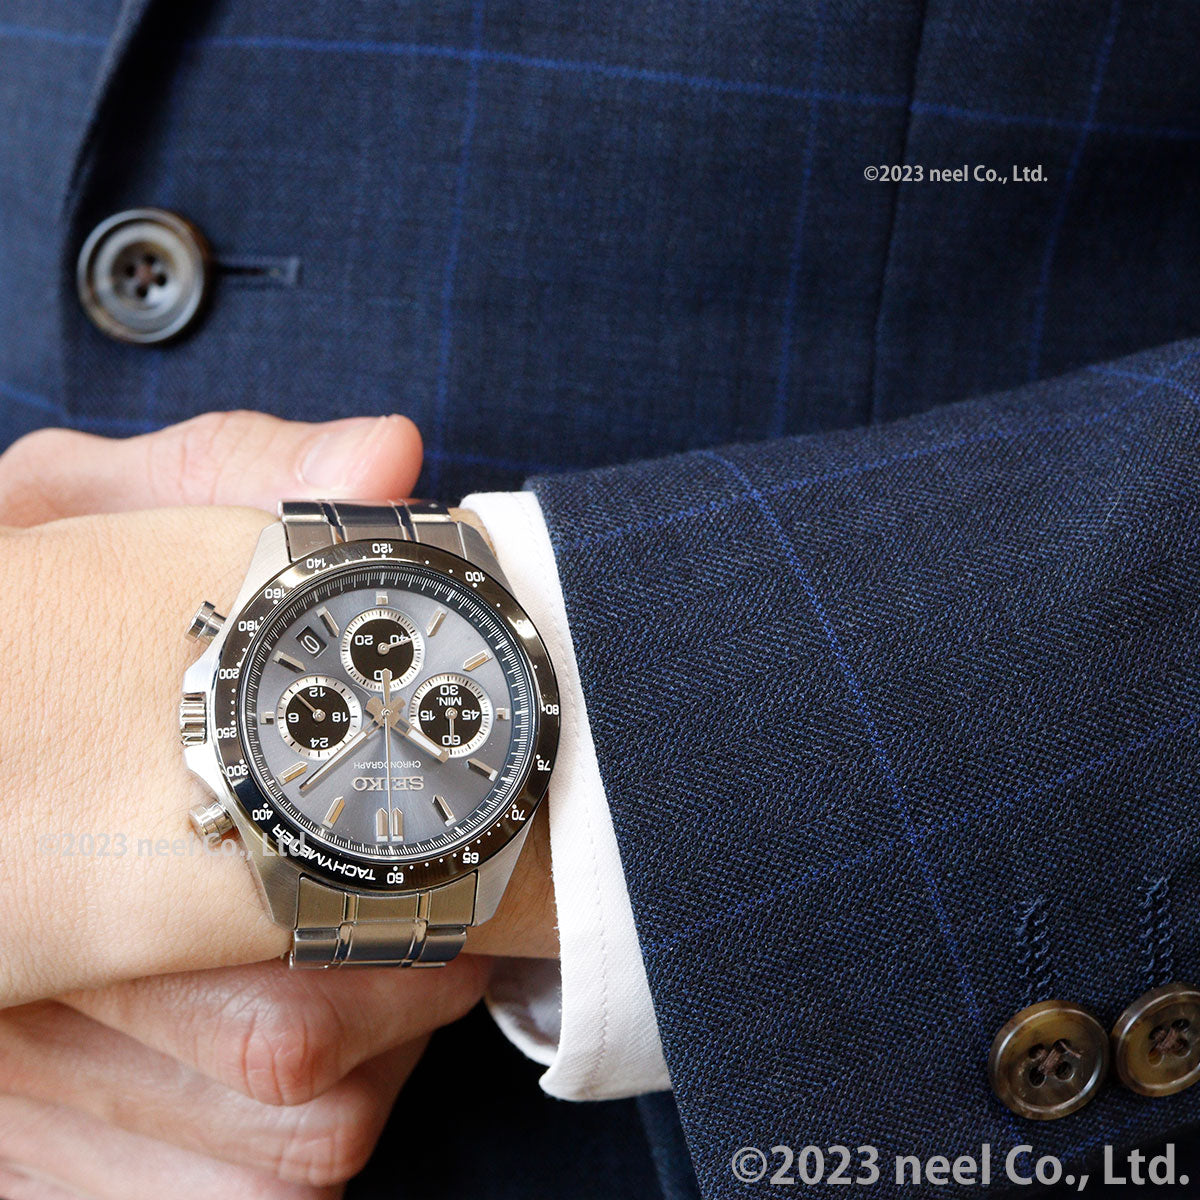 セイコー セレクション SEIKO SELECTION 8Tクロノ SBTR027 腕時計 メンズ クロノグラフ